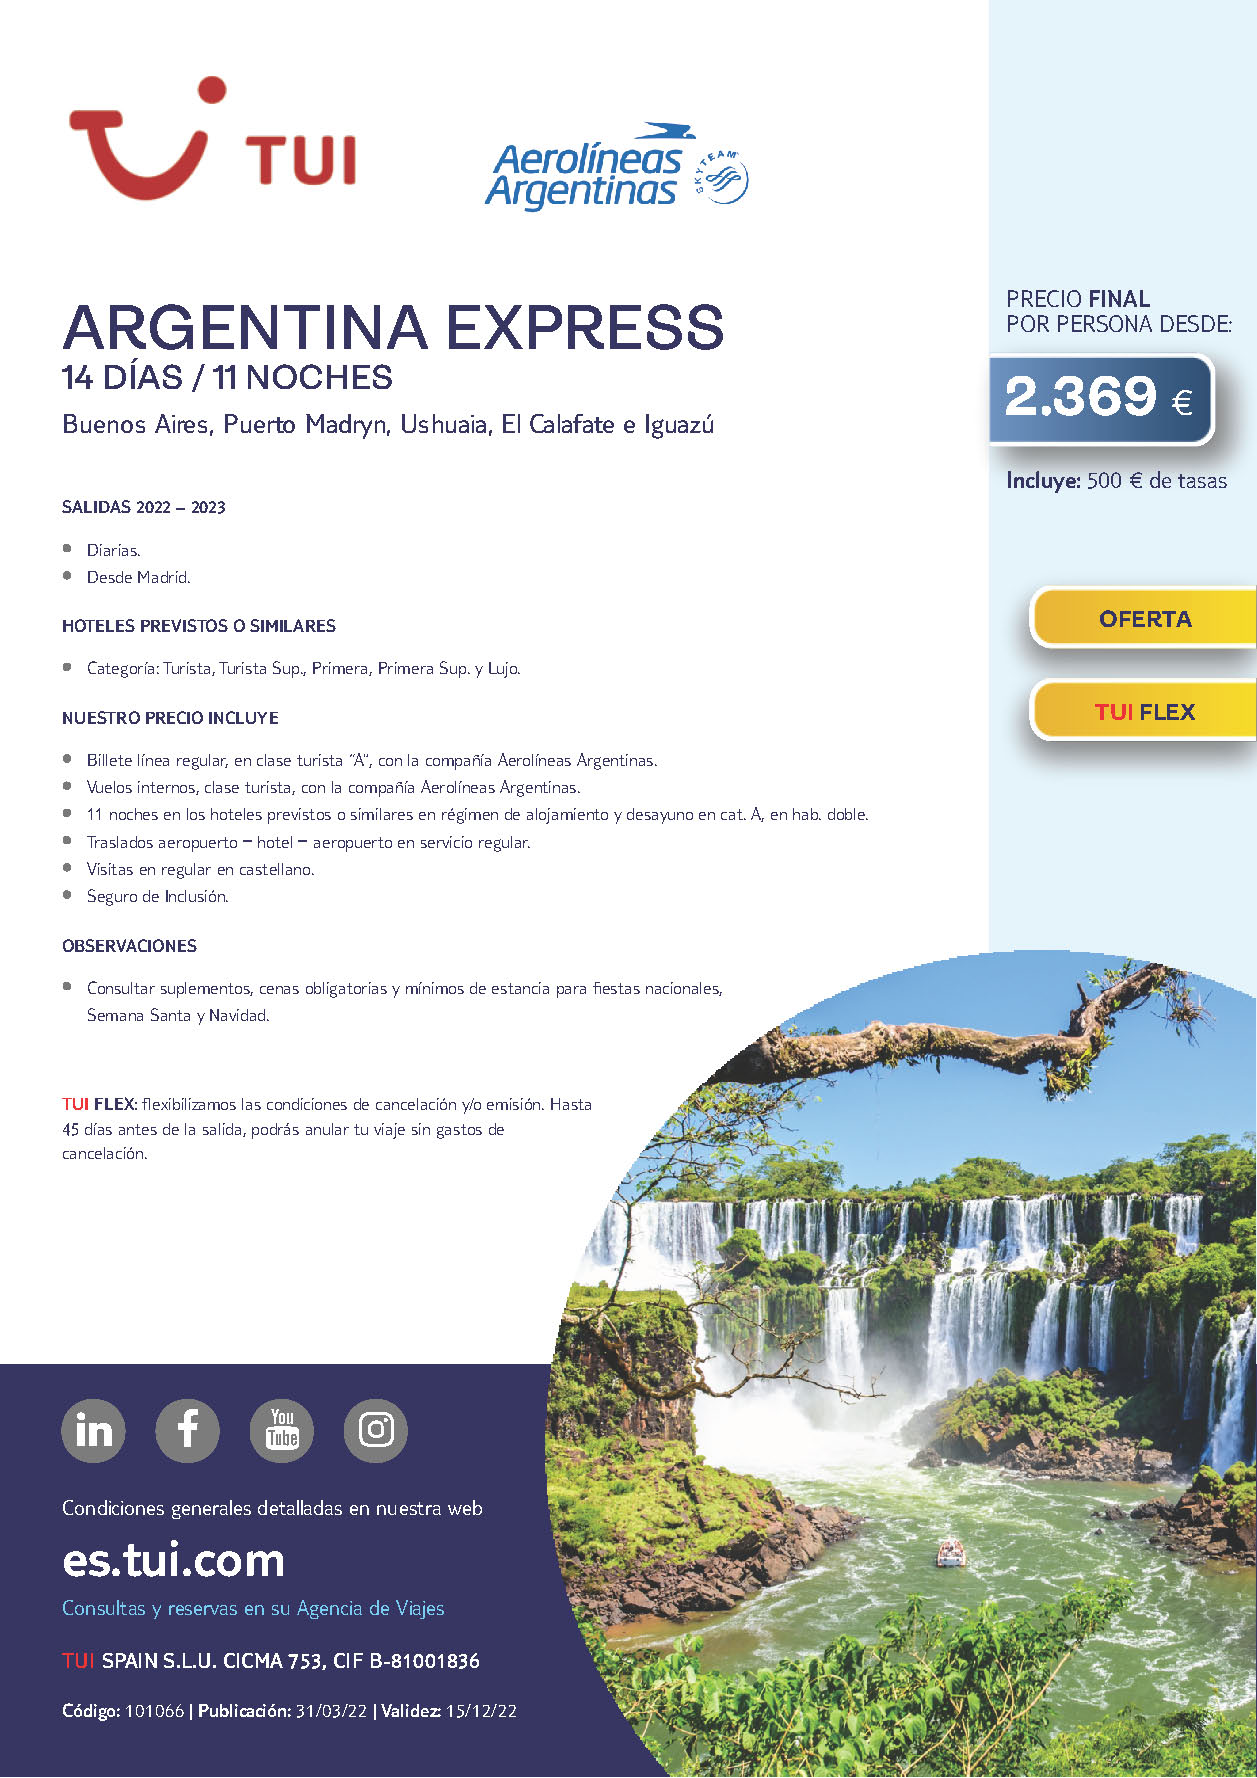 Oferta TUI Argentina Express 14 dias salidas 2022 y 2023 desde Madrid vuelos directos Aerolineas Argentinas